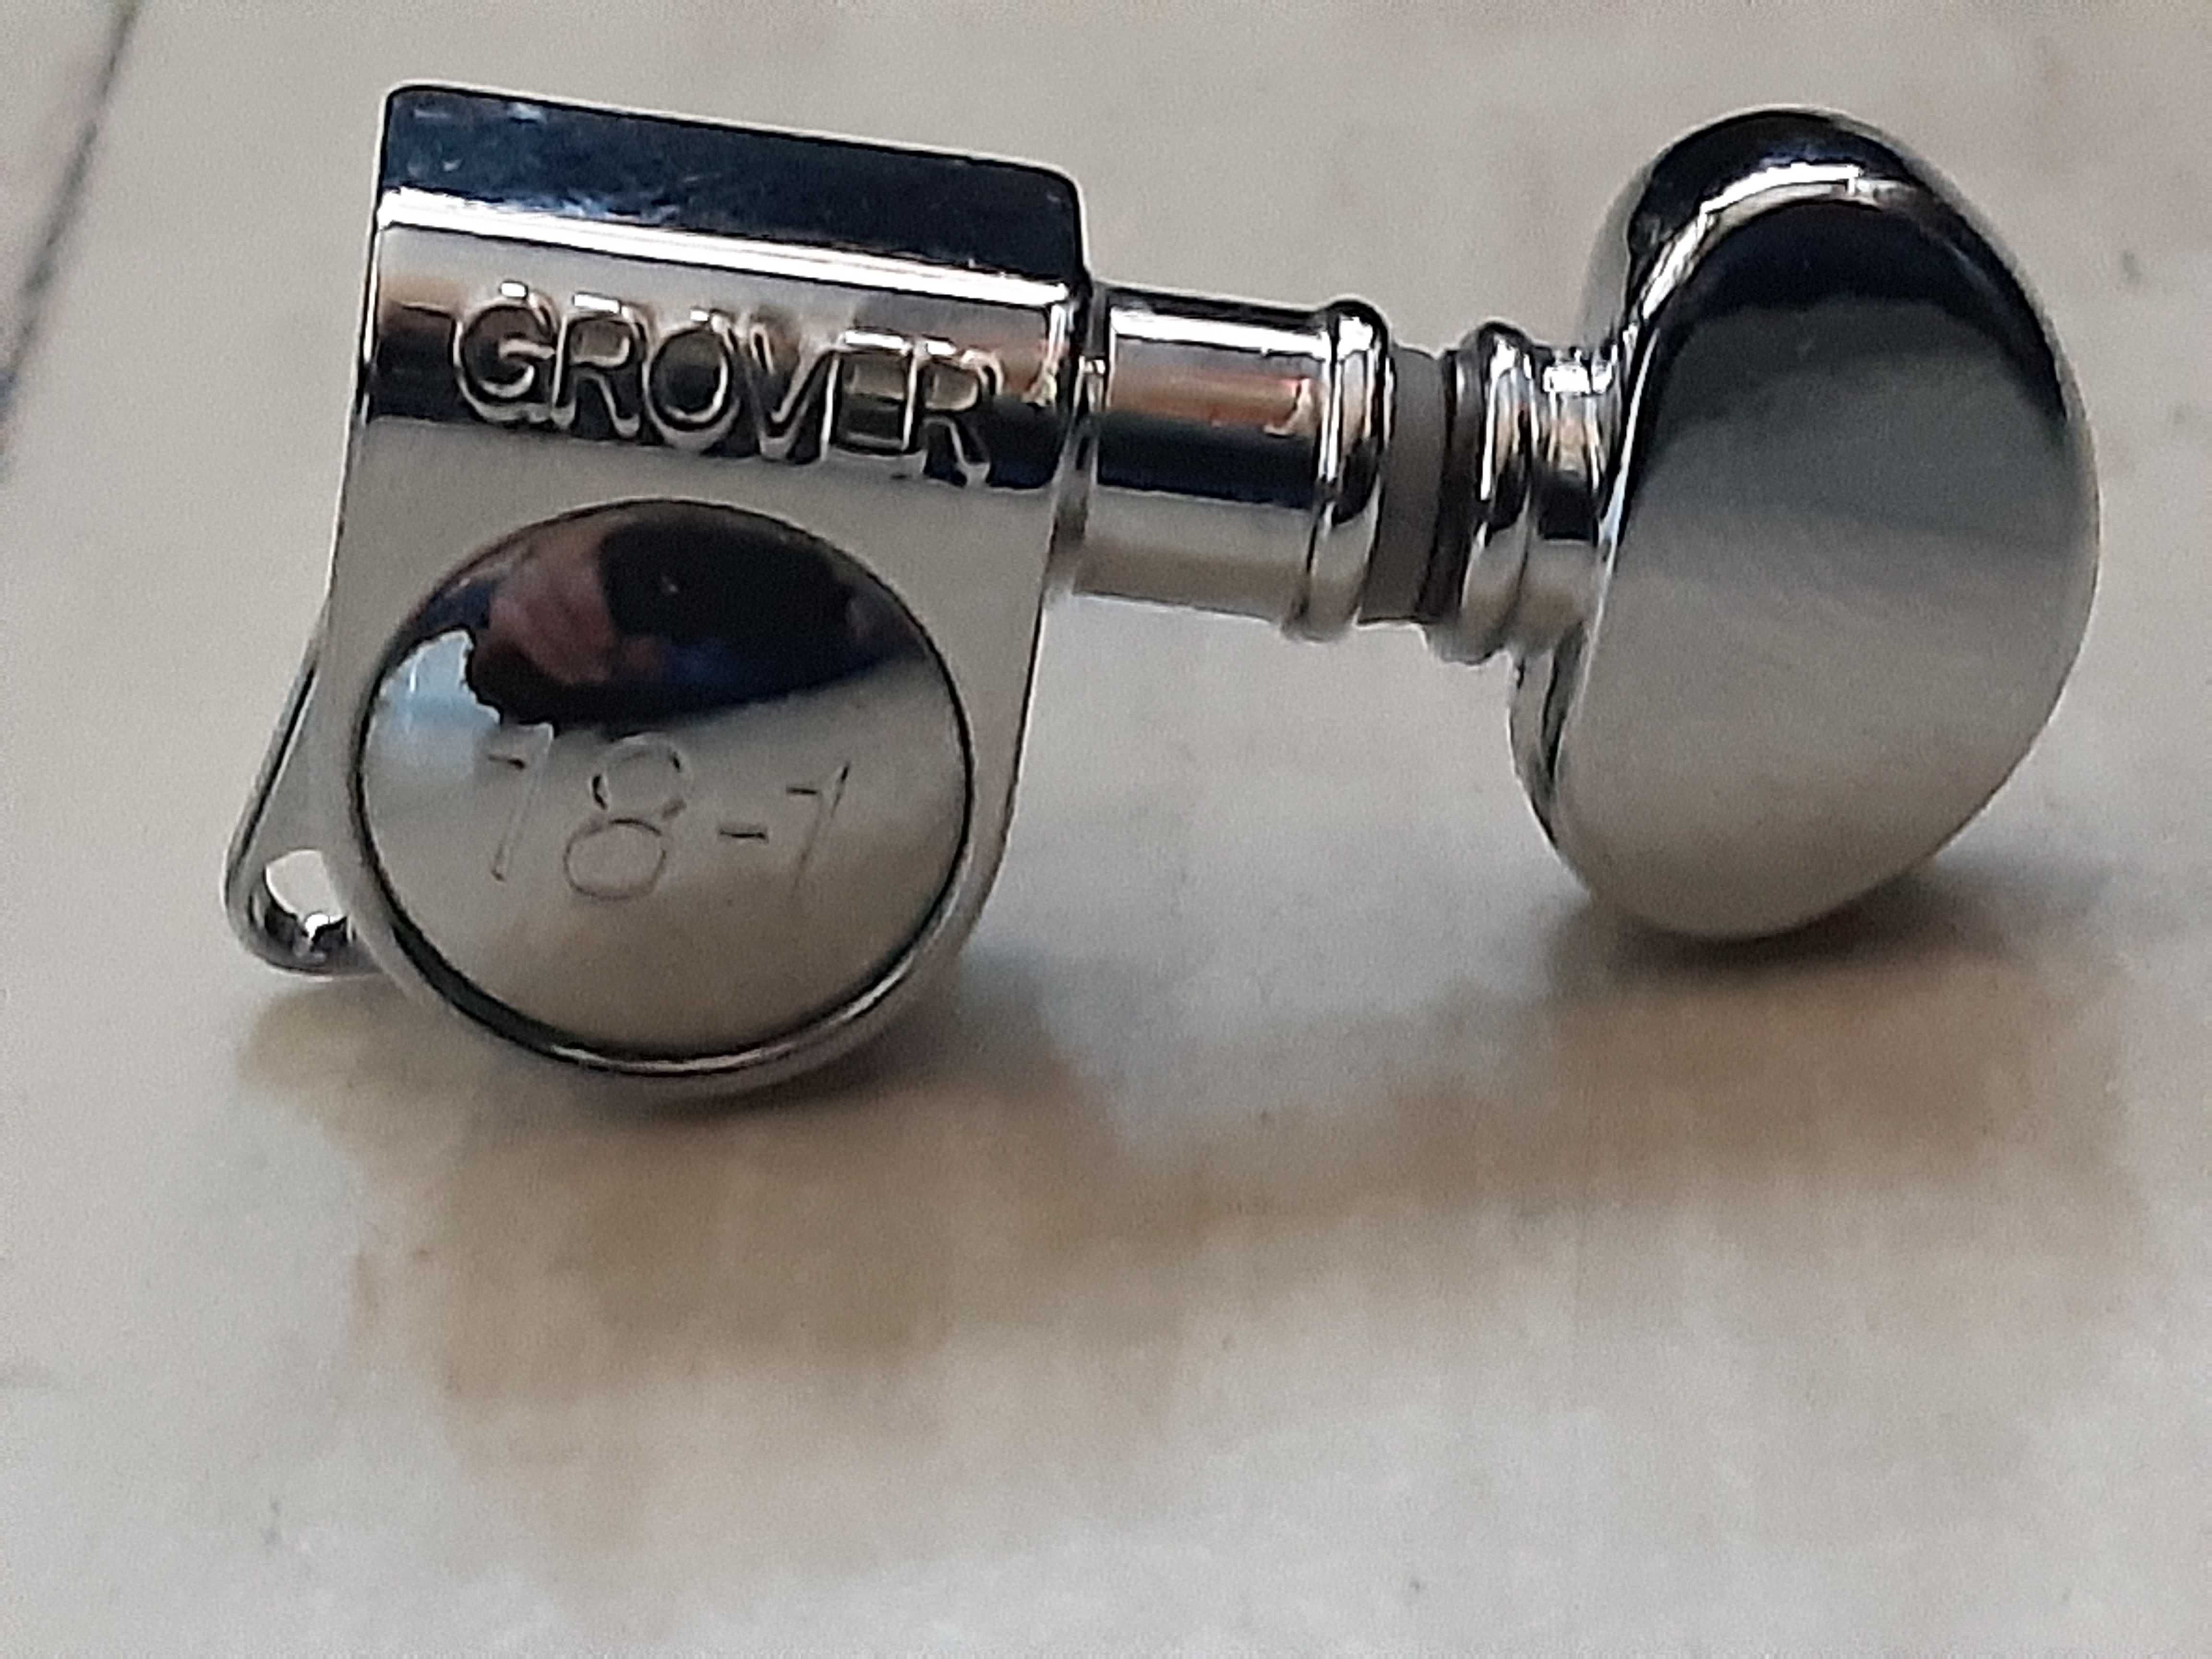 Klucze Gitarowe Grover 18/1 - 6 w Linii - 6L -wysyłka lub dodam Gratis